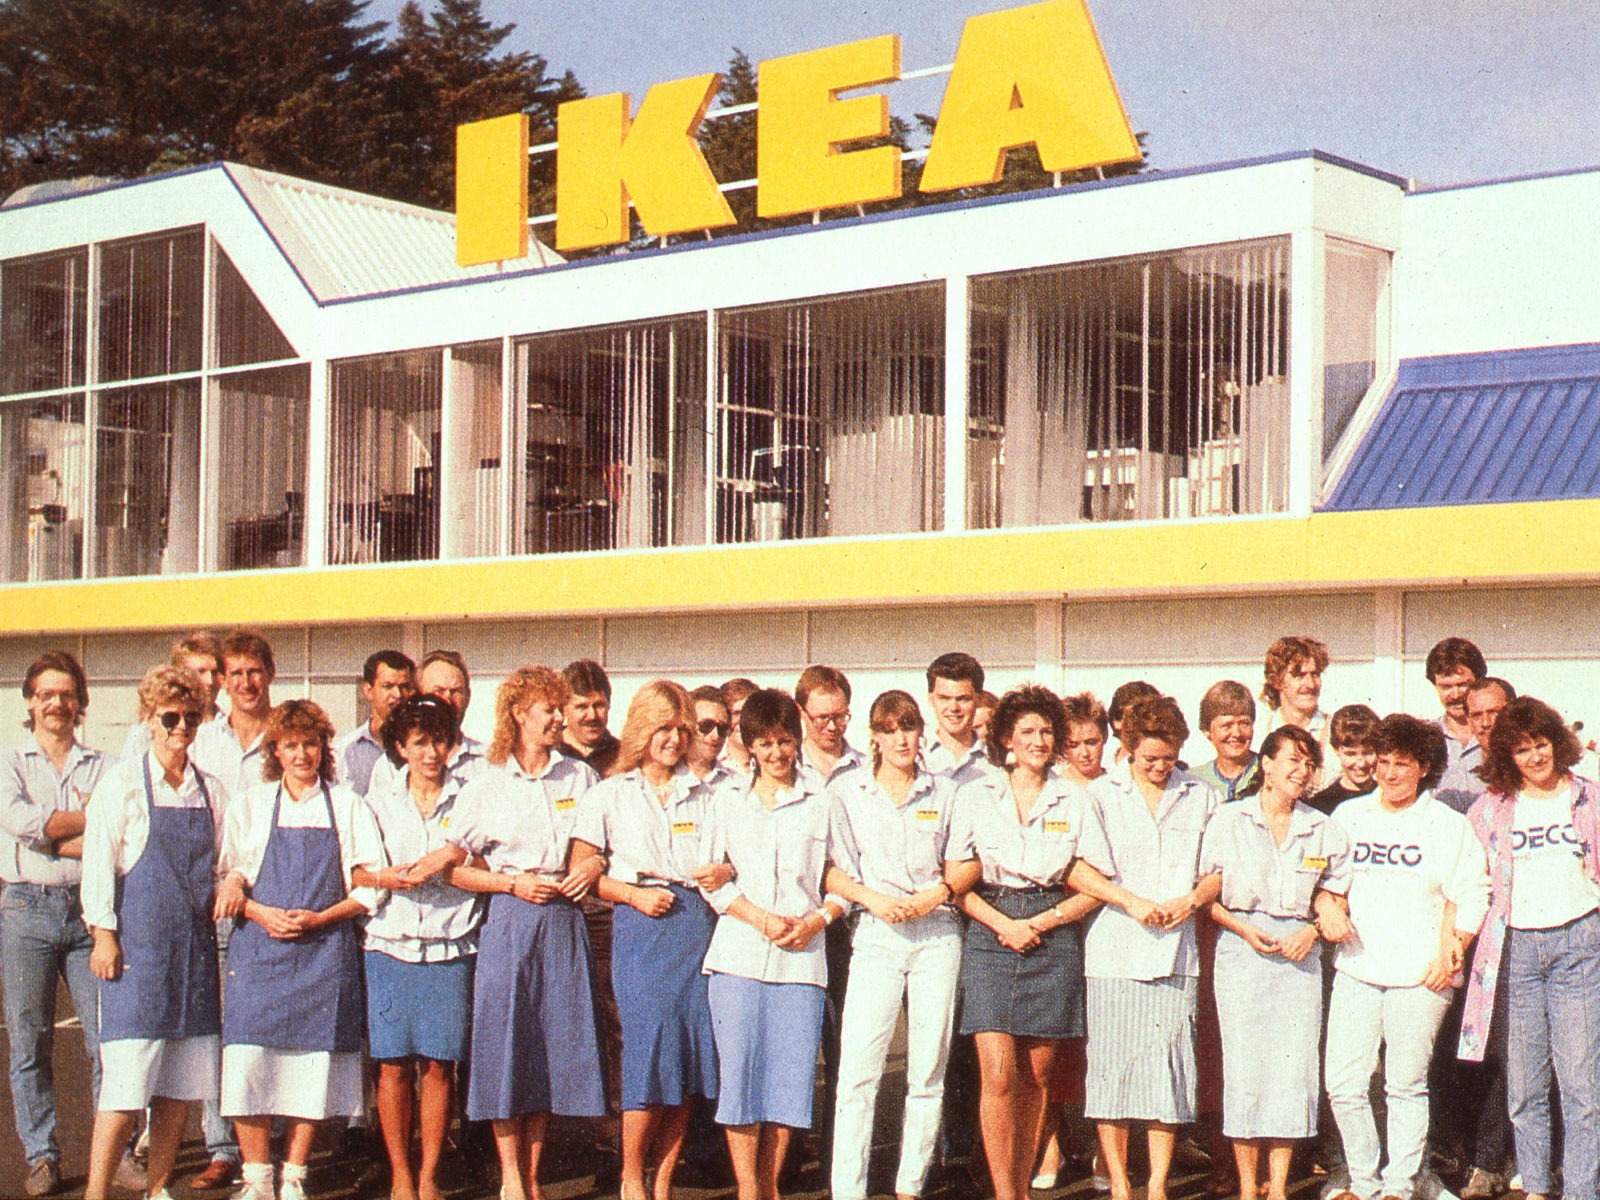 Gruppfoto av personal på IKEA i Tyskland i blå och vita kläder framför vit byggnad med gul IKEA skylt.